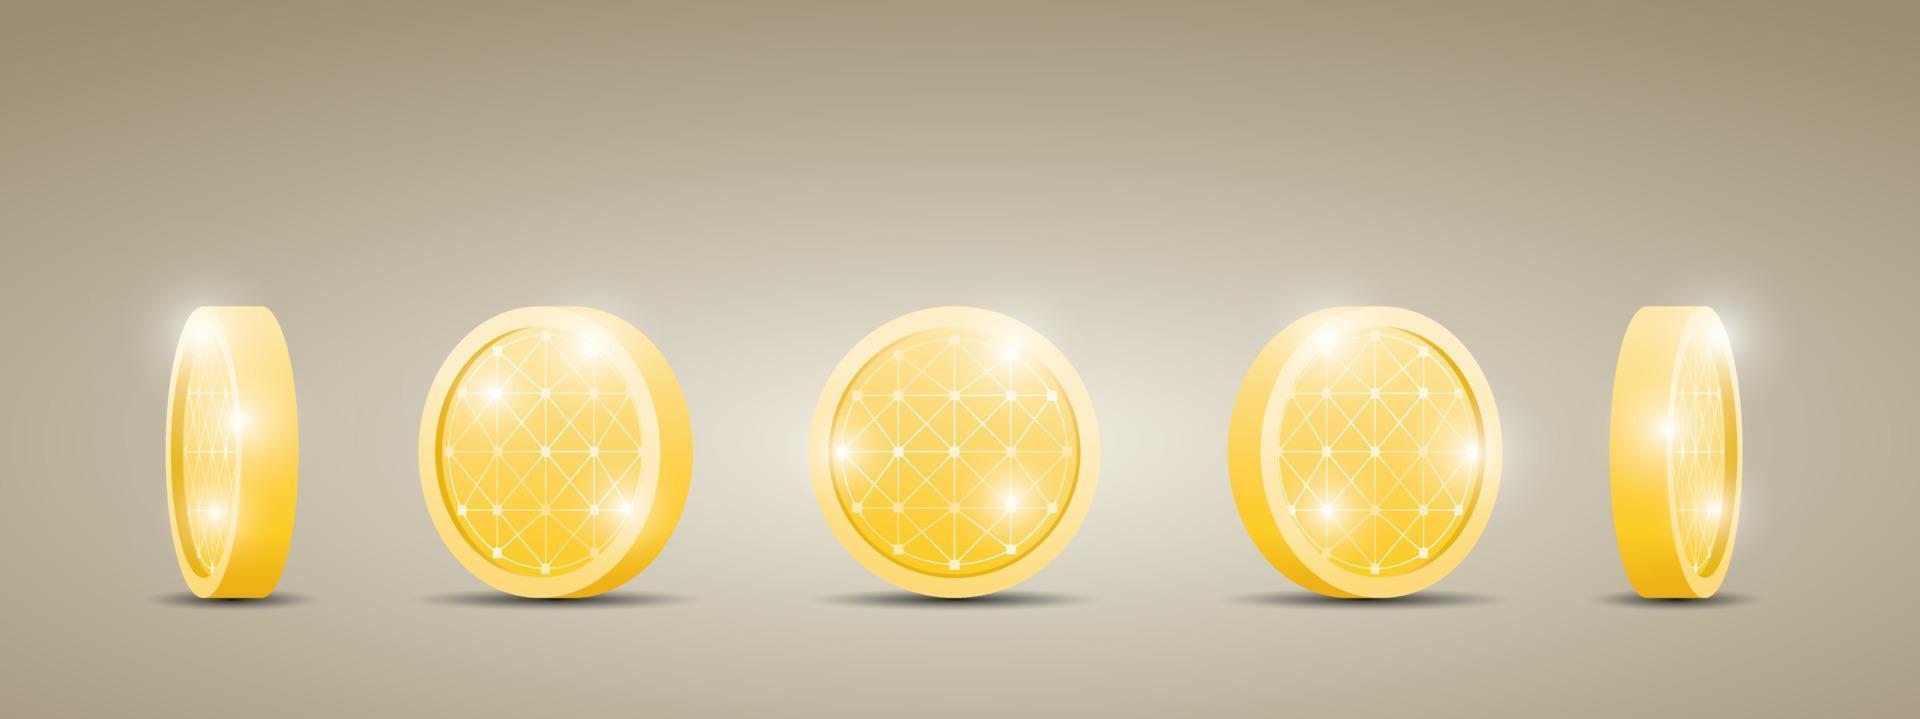 luxe gouden munt of token in verschillende weergaven 3d illustratie vector